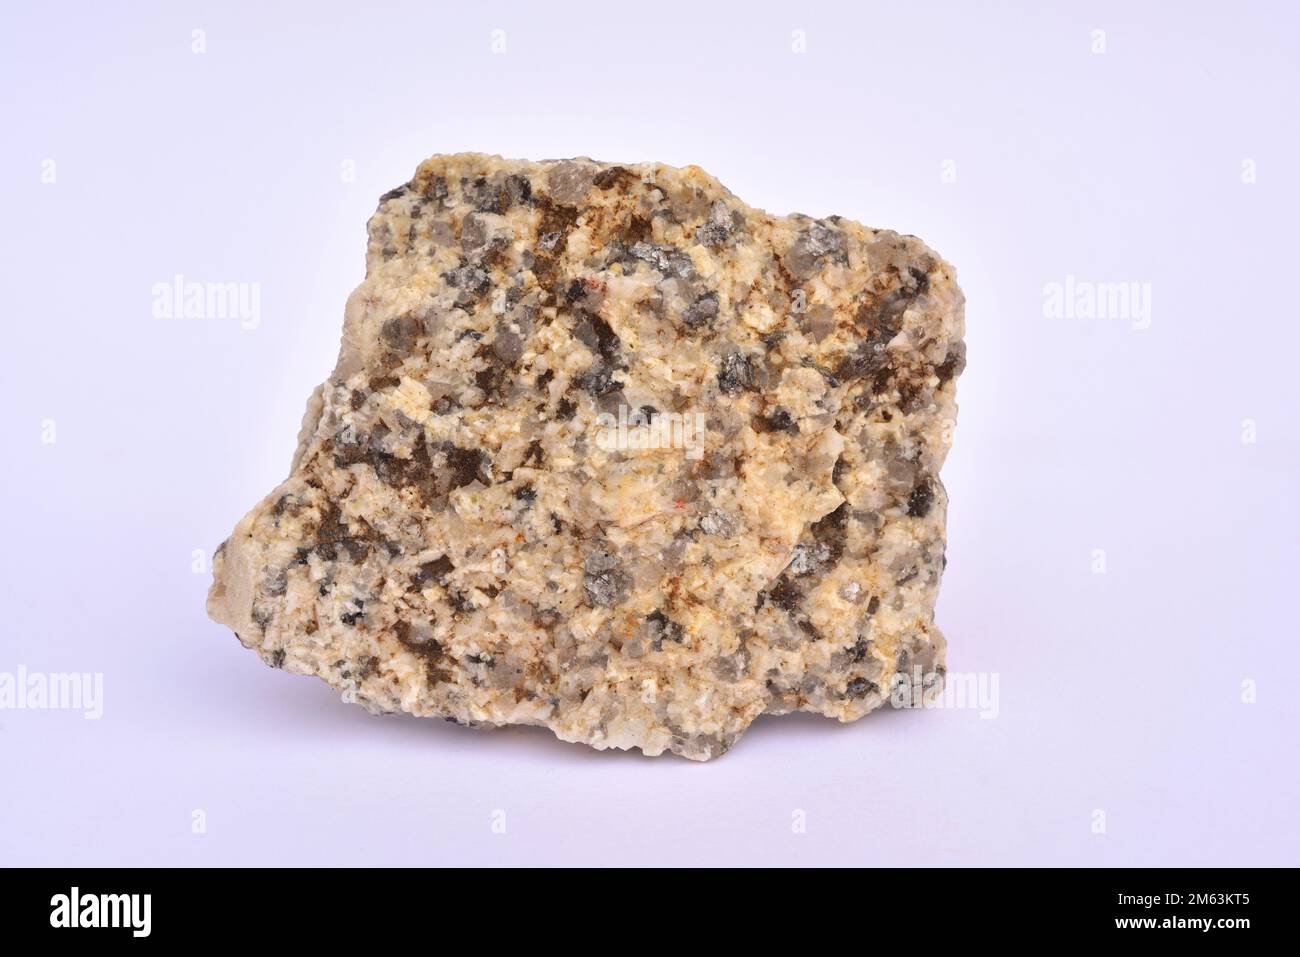 Granit ist ein bösartiger, aufdringlicher Felsen, der hauptsächlich für Quarz, Feldspat, Plagioclase und Glimmer verwendet wird. Probe. Stockfoto